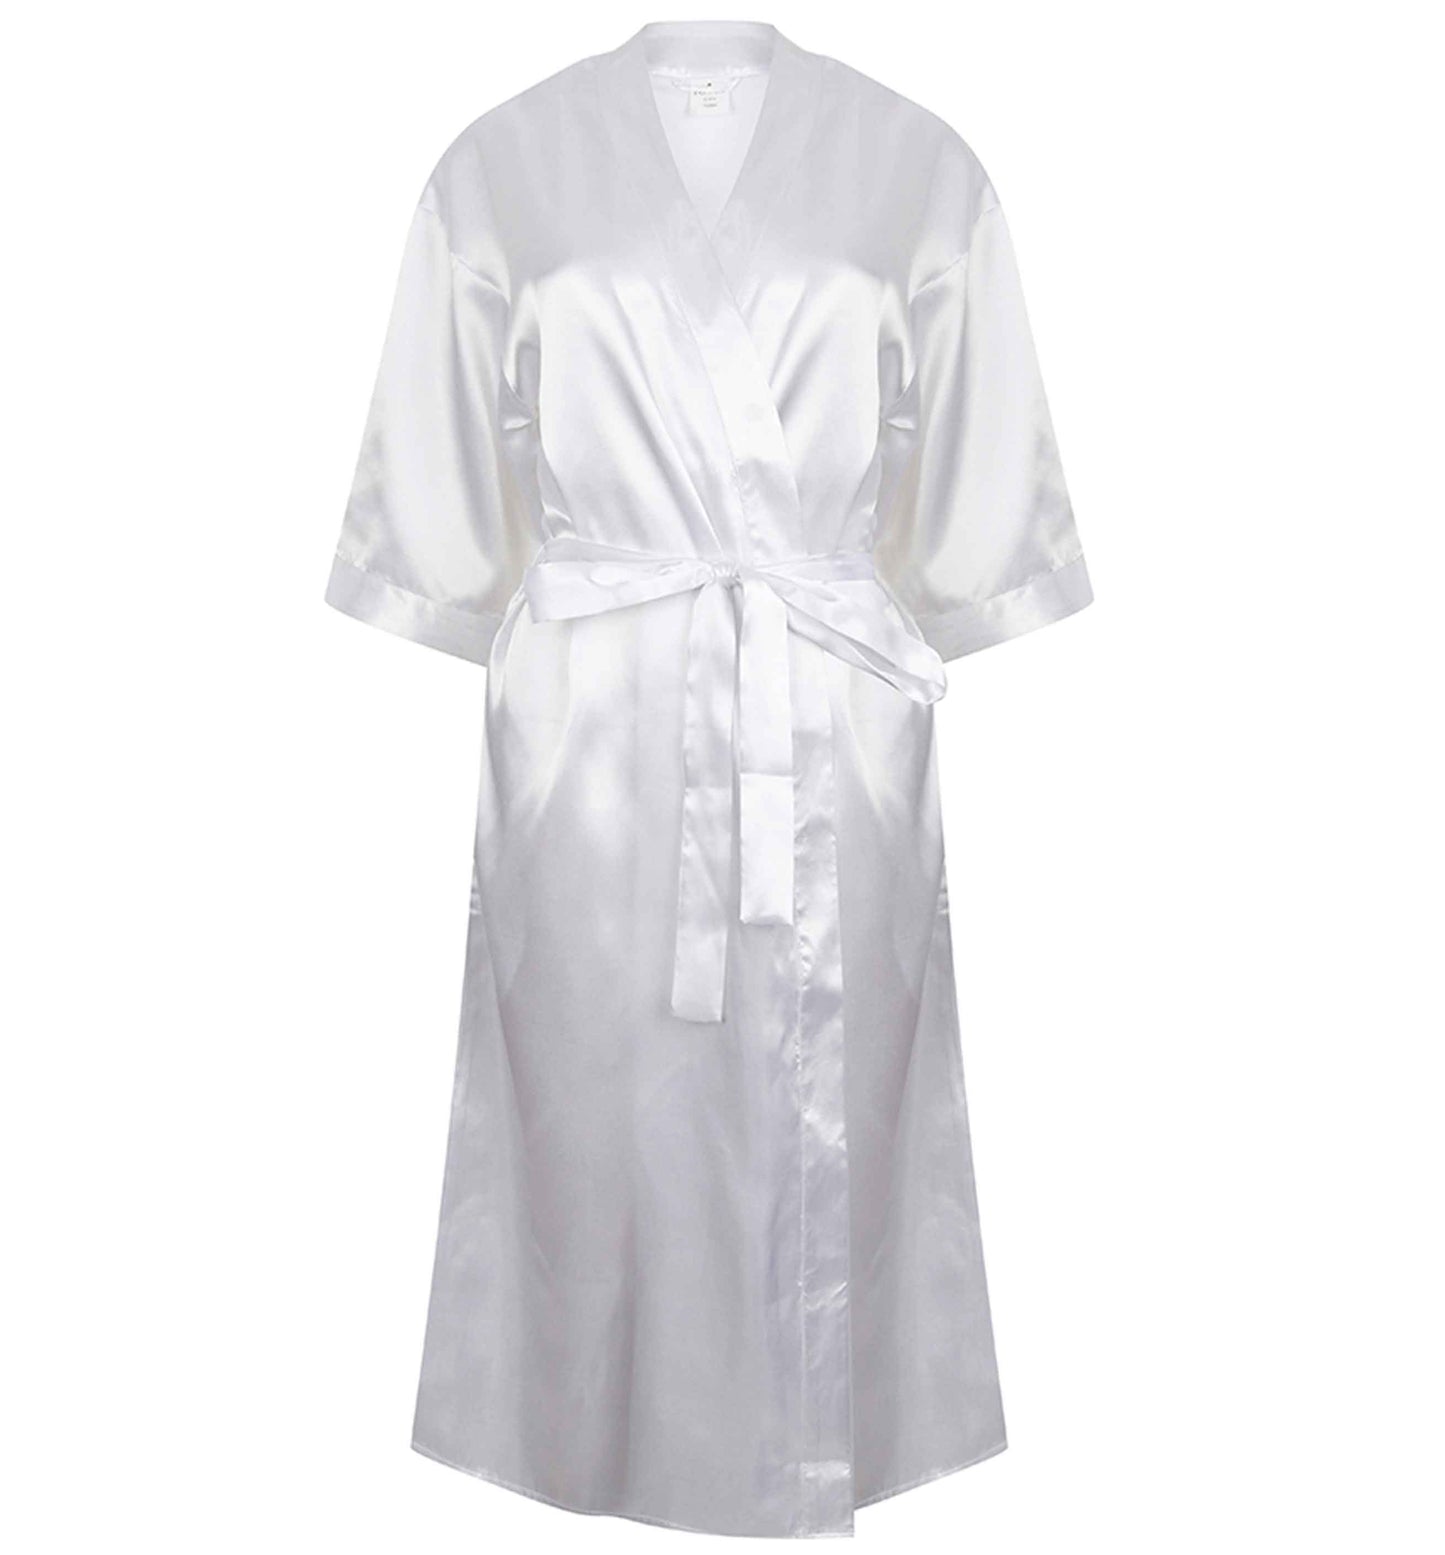 Happy Easter watercolour | 8-18 | Kimono style satin robe | Ladies dressing gown